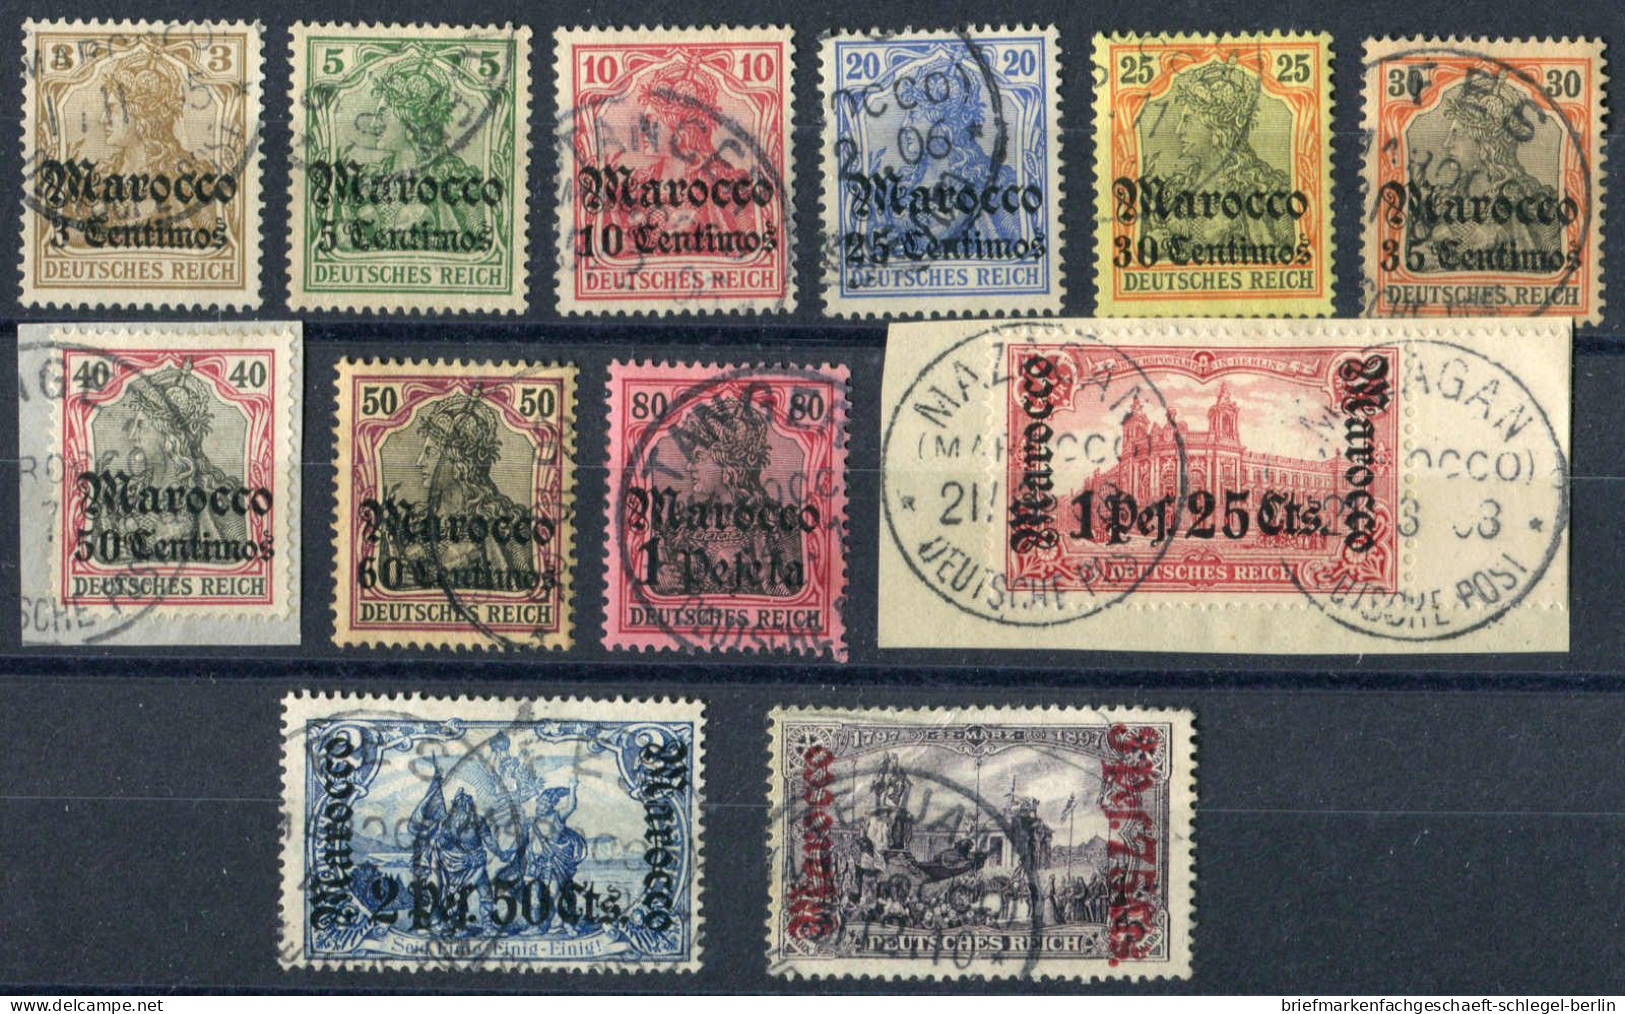 Deutsche Auslandspost Marokko, 1905, 21/32, Gestempelt, Briefstück - Turchia (uffici)